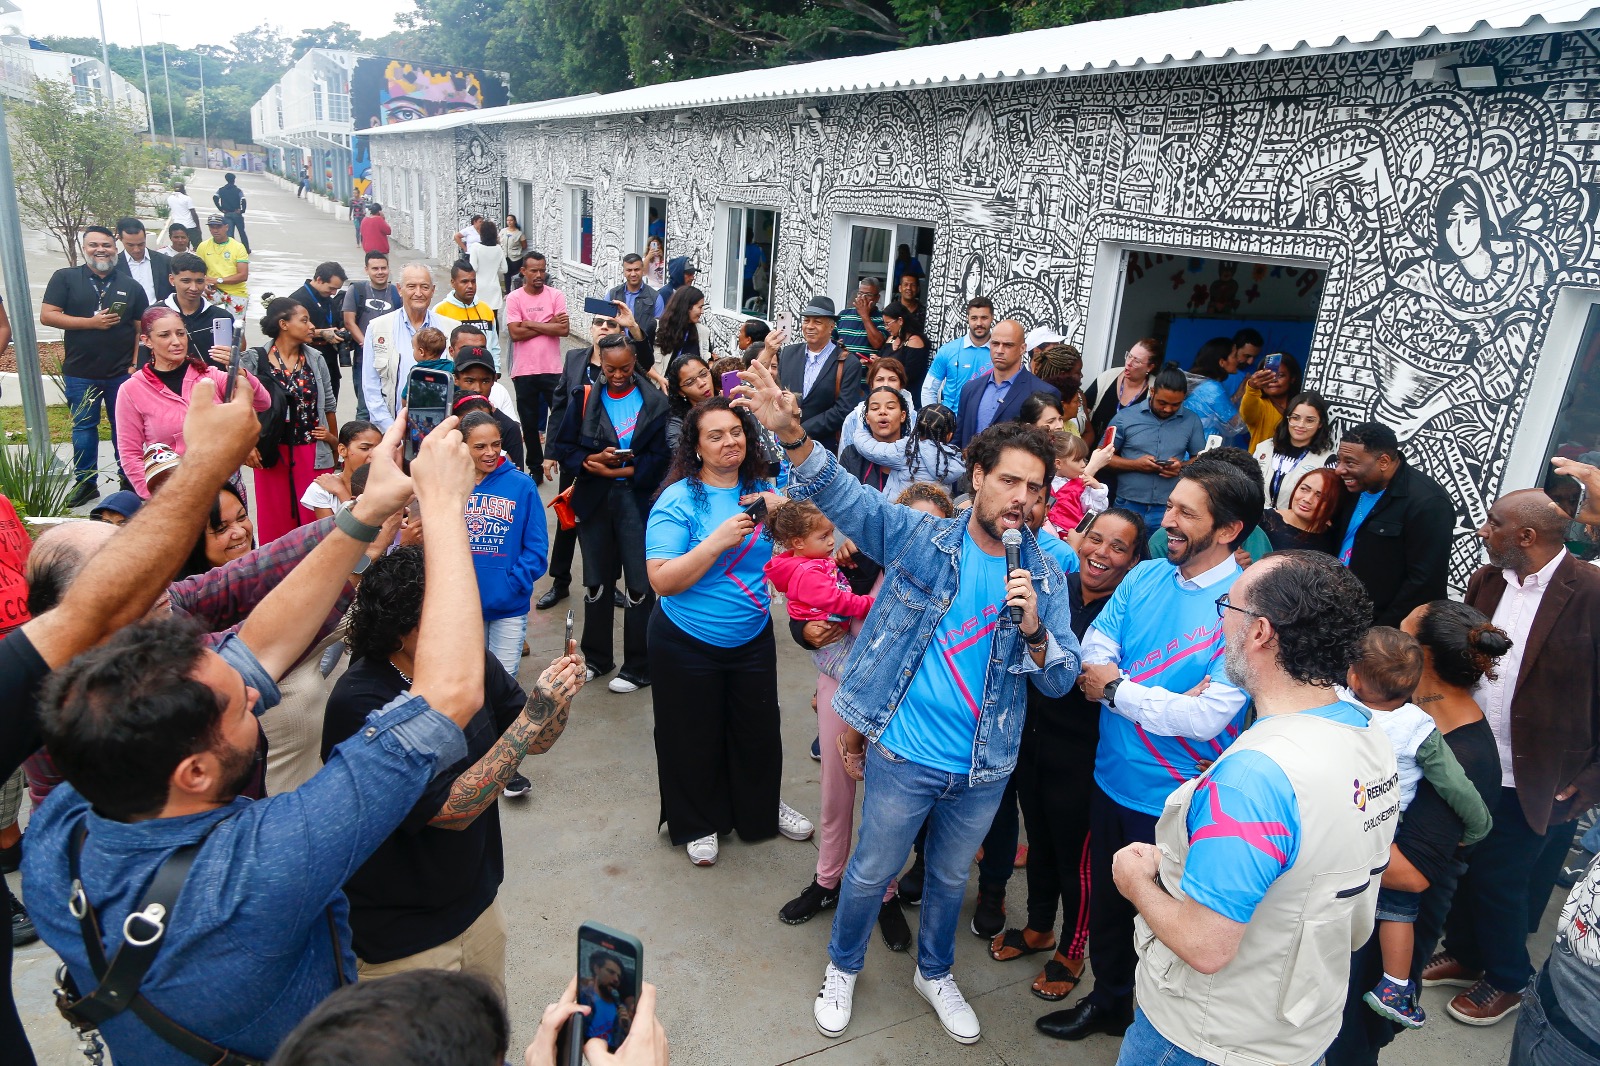 Na foto, diversos moradores e convidados estão reunidos assistindo uma orquestra. O prefeito Ricardo Nunes está no meio, ao lado do tenor Thiago Arancam. Eles cantam juntos.